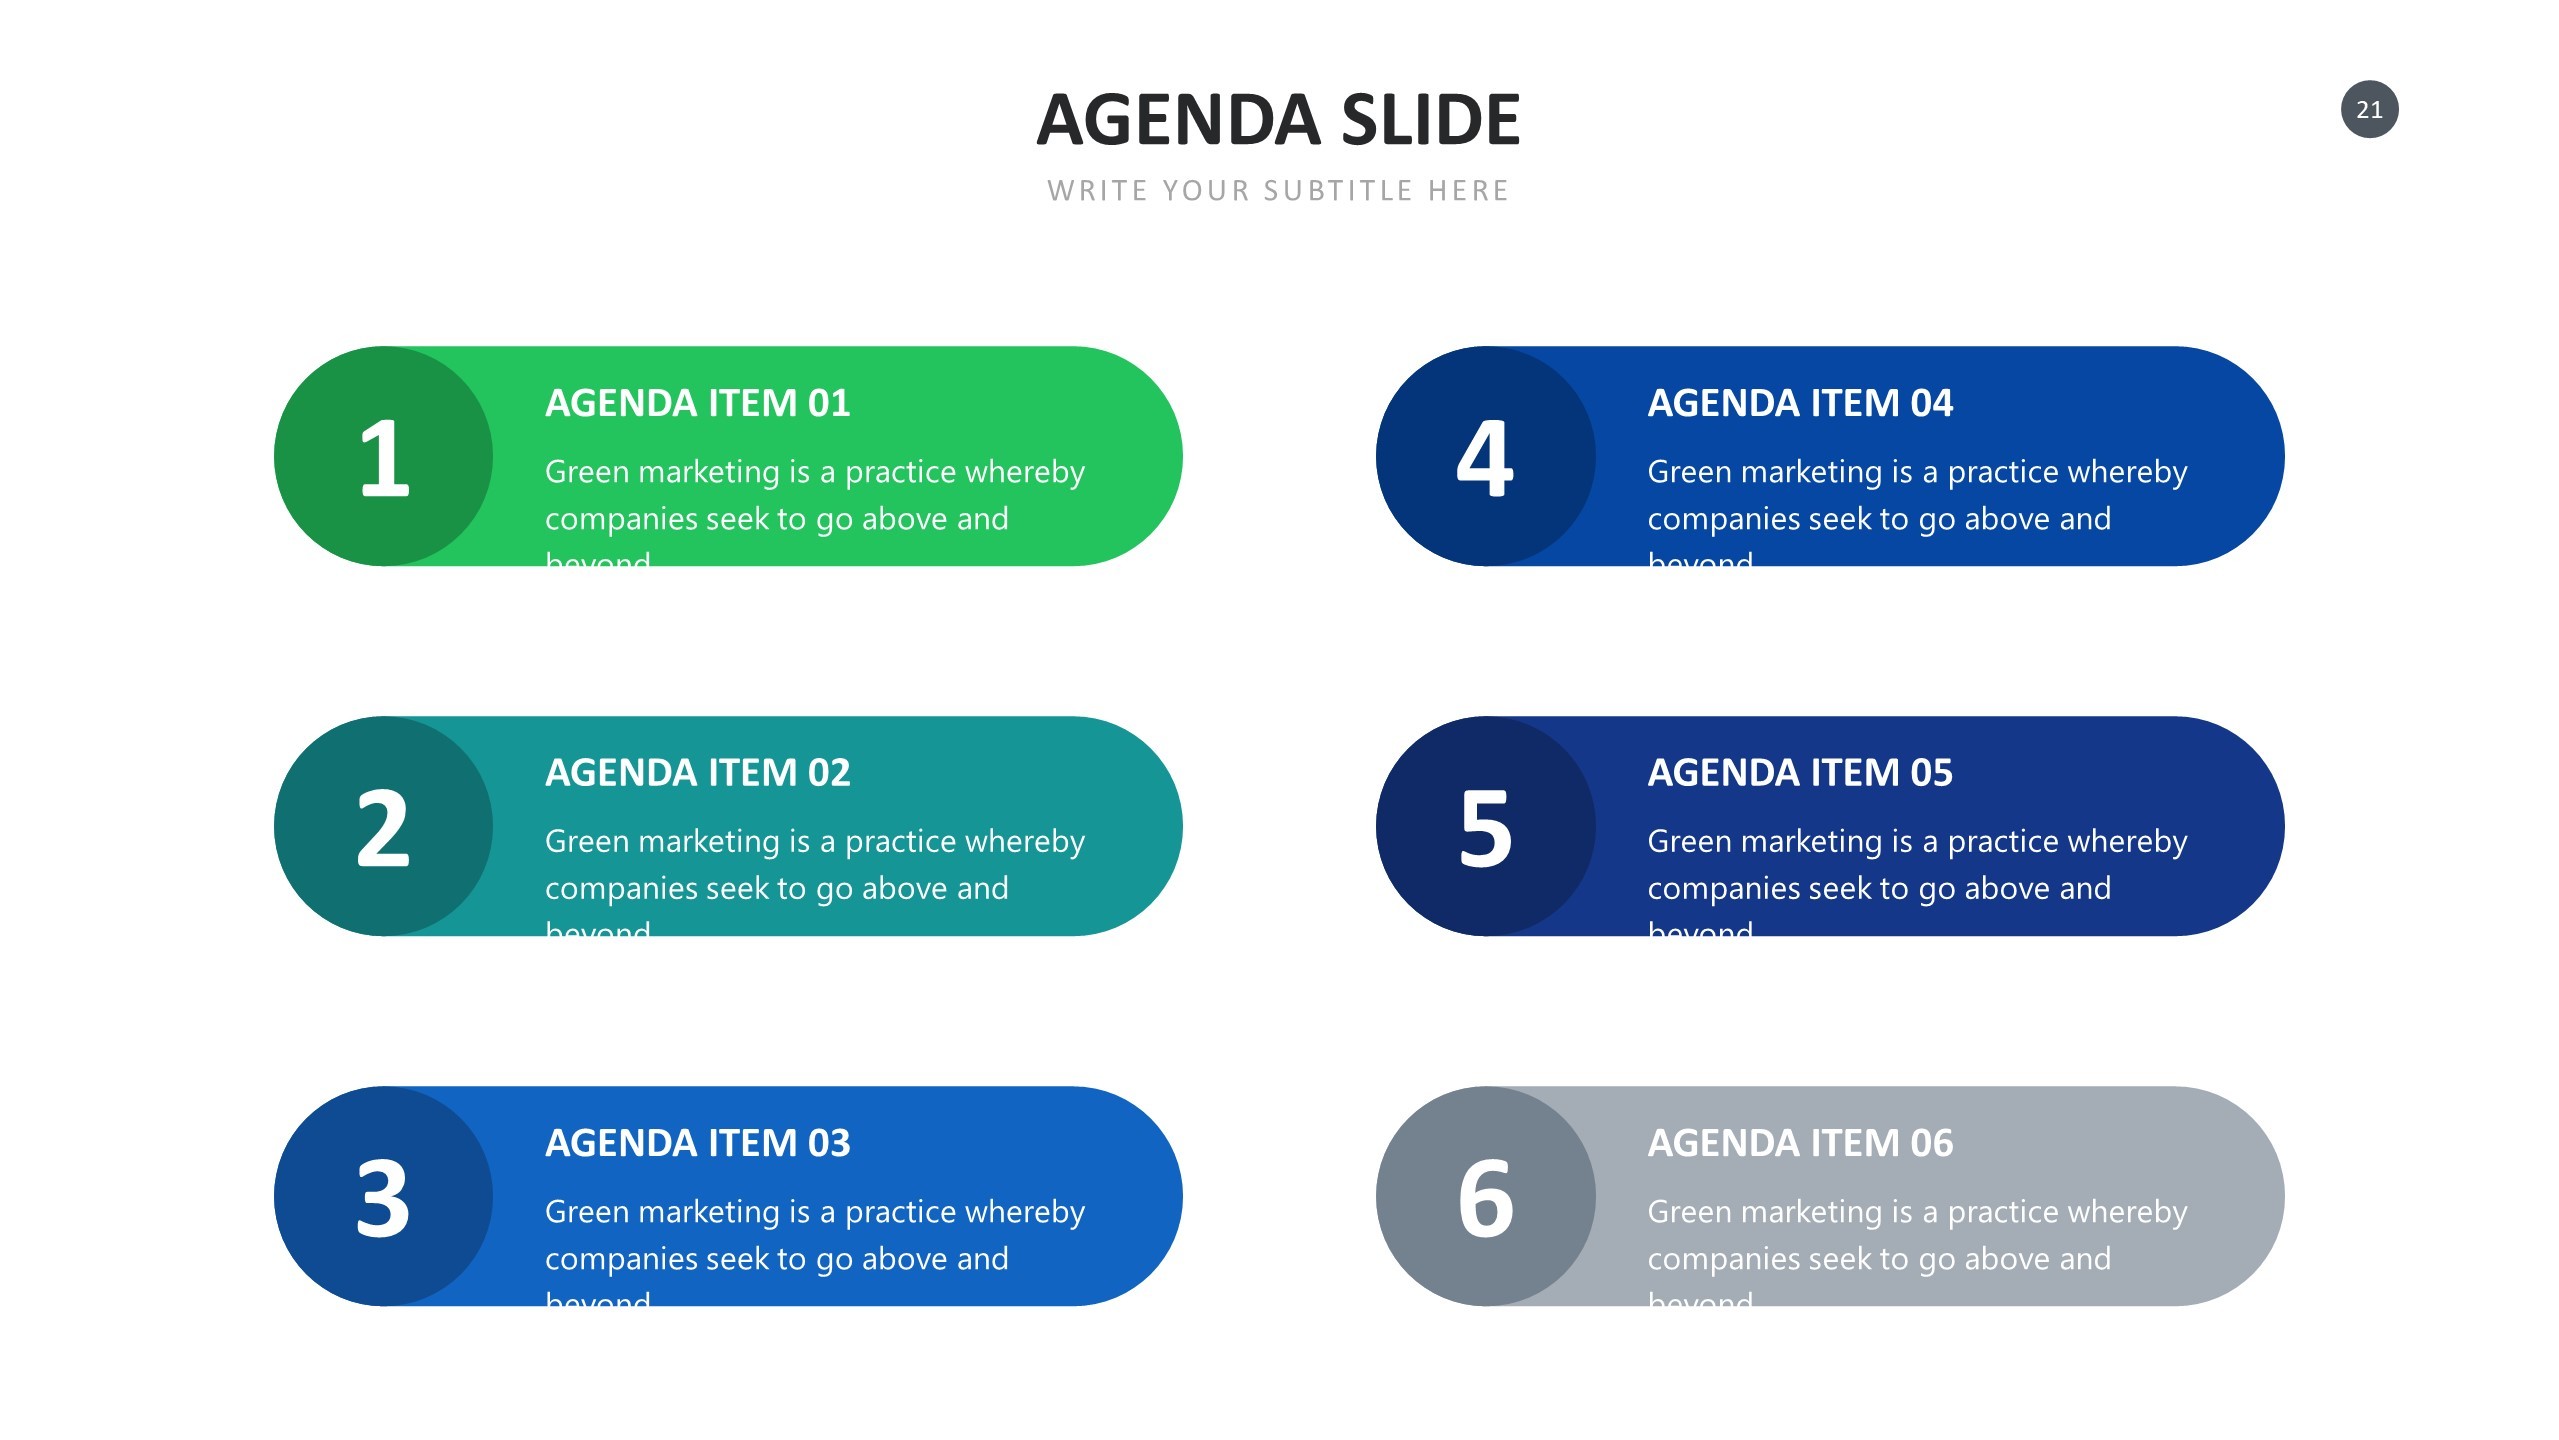 Tải miễn phí hơn 20 template danh mục (Agenda) cho Powerpoint Slides